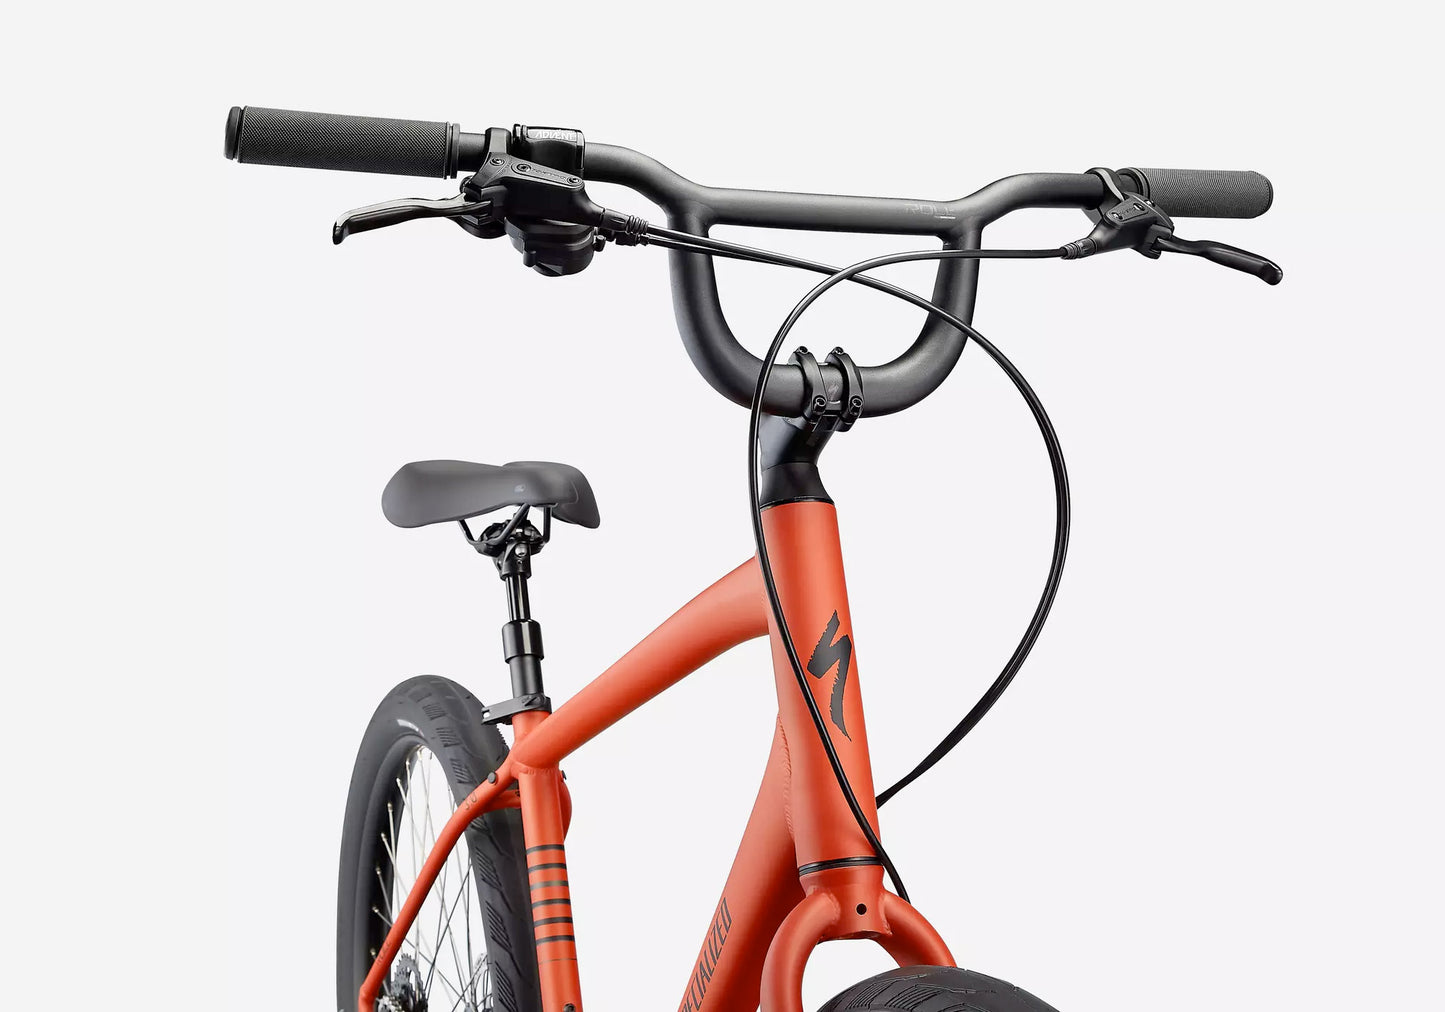 Specialized Roll 3.0 Unisex Fitness/Urban Bike - Satin Redwood